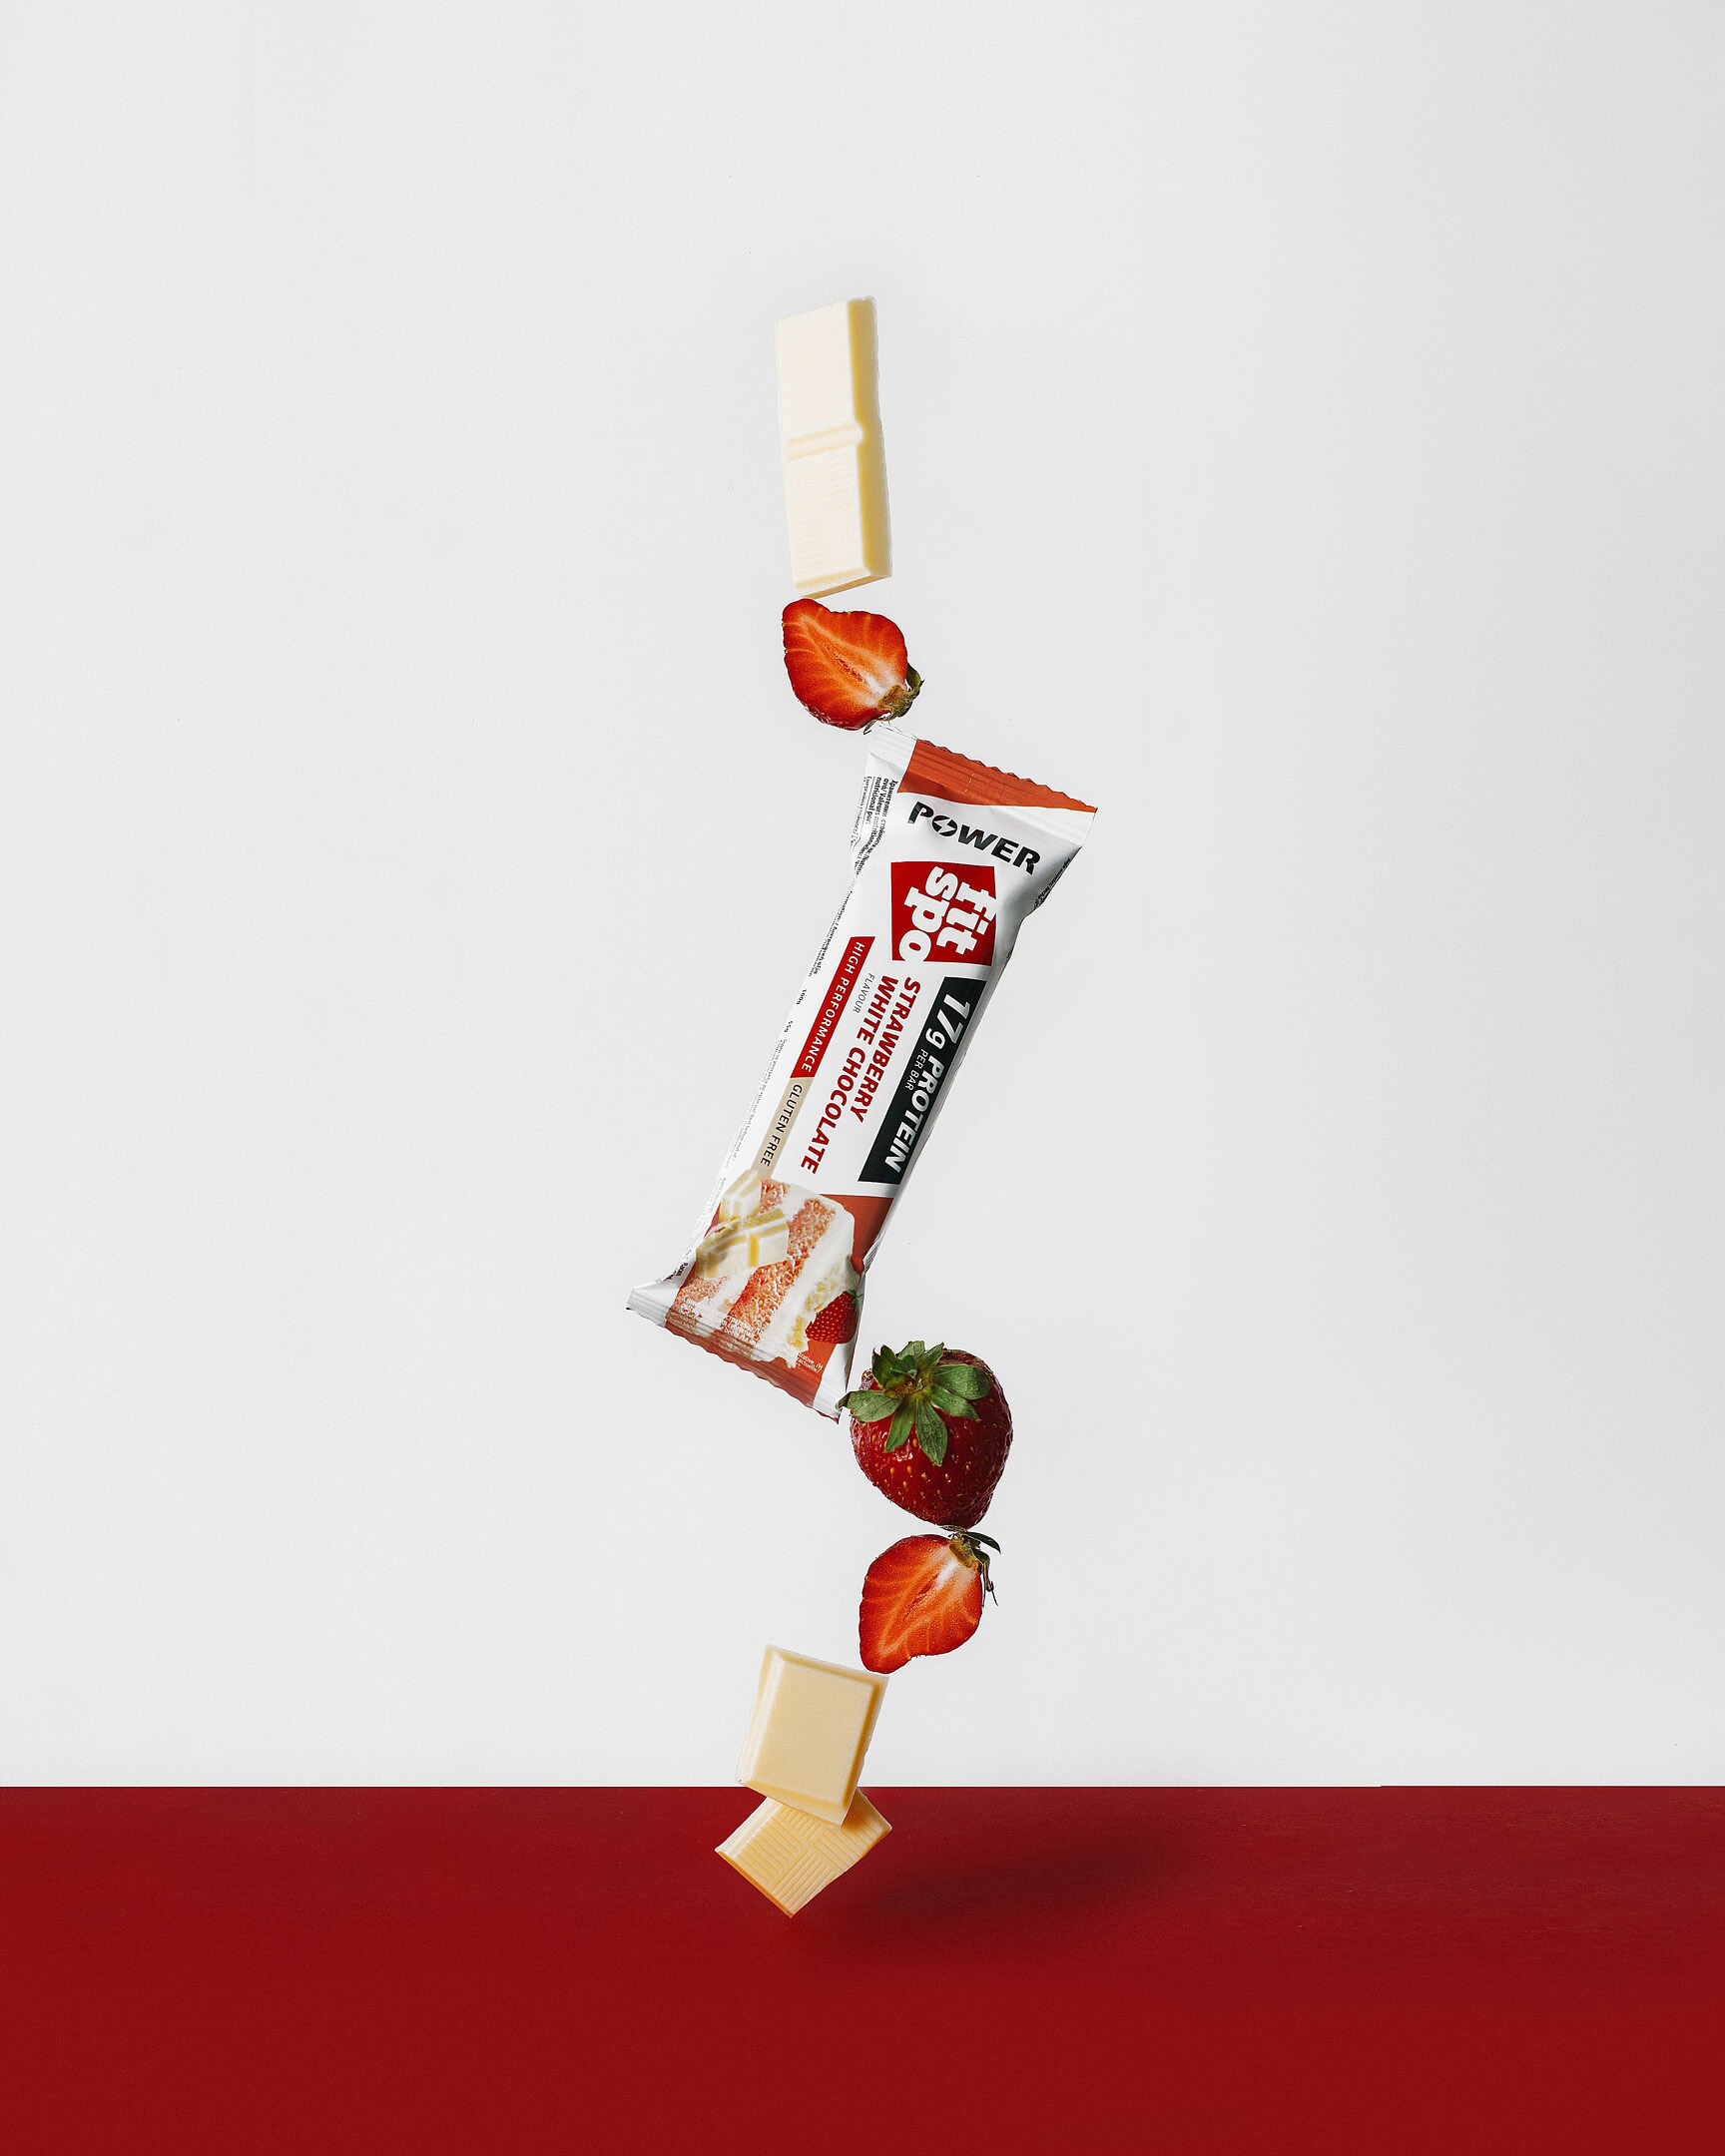 Fitpro bar балансира, сред ягоди и парчета шоколад Fitpro бар балансира, стоящ върху парче бял шоколад и ягоди. На върха на бара има също ягоди и парчета шоколад.